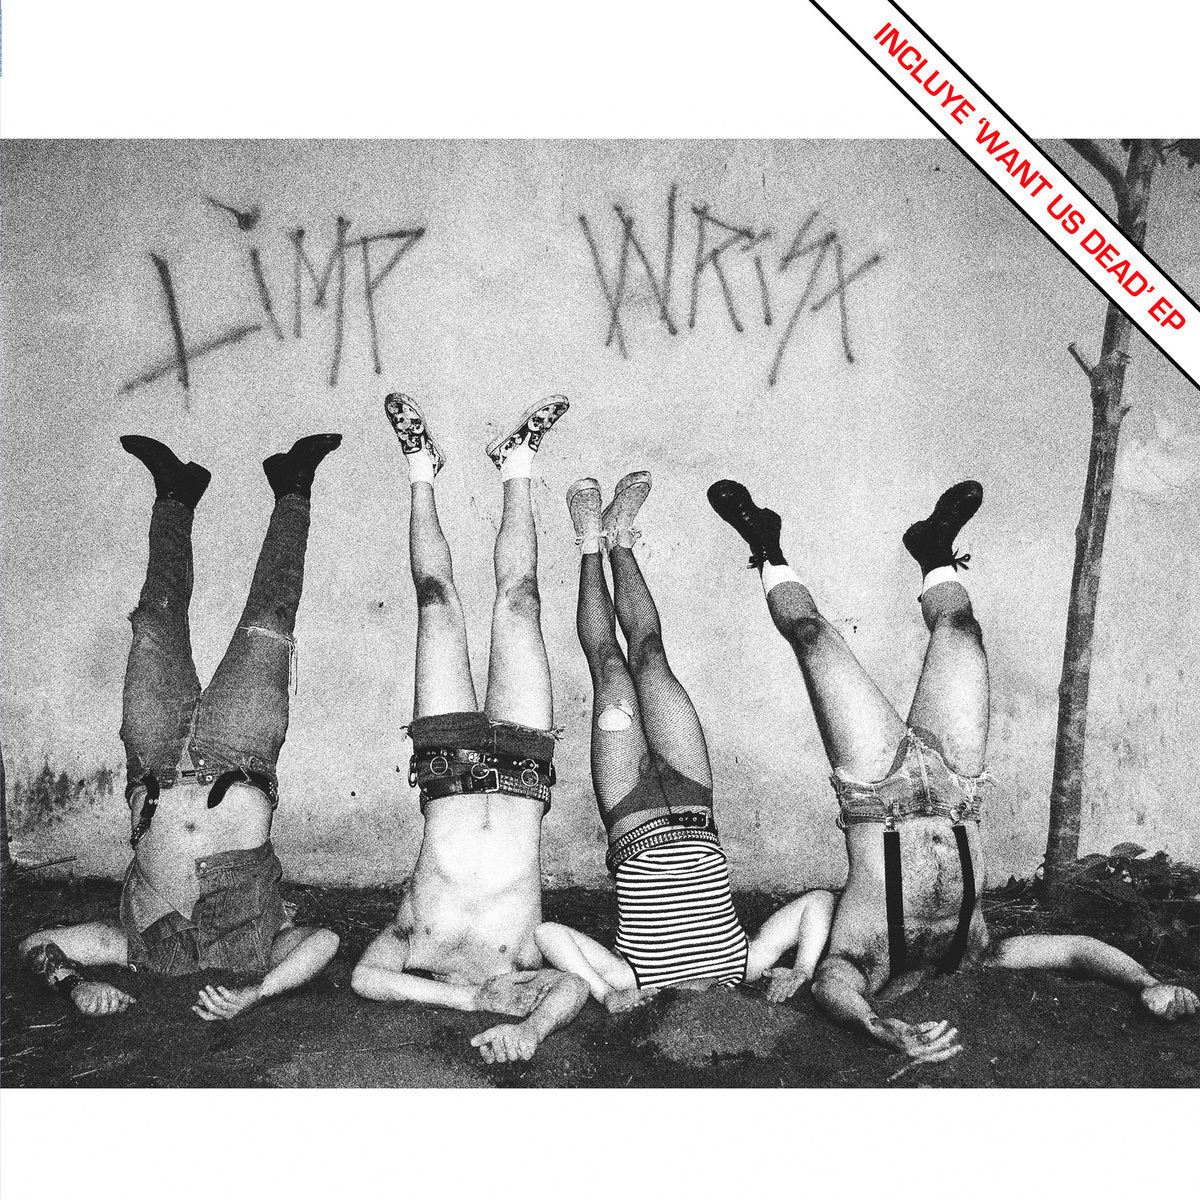 Limp Wrist "Limp Wrist/Want Us Dead" 12" Vinyl